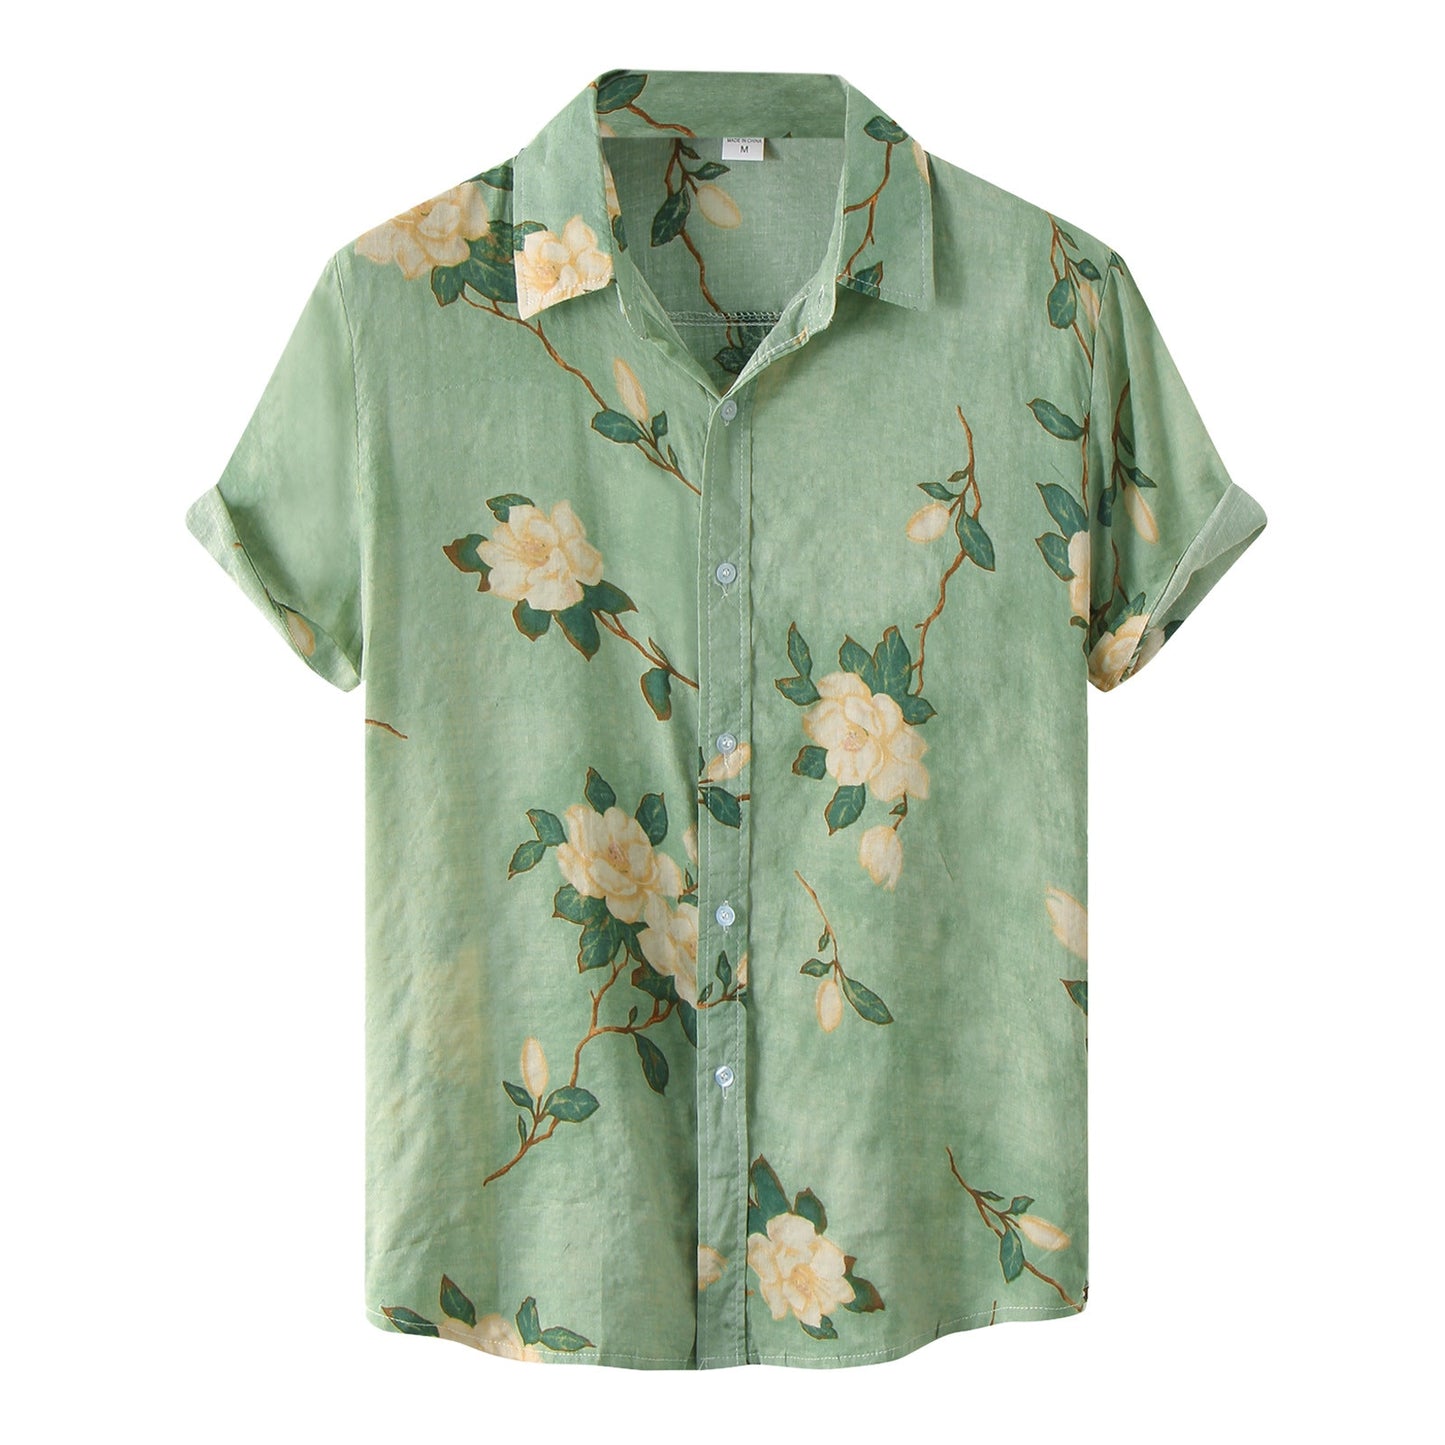 Vintage Rose Summer Shirt